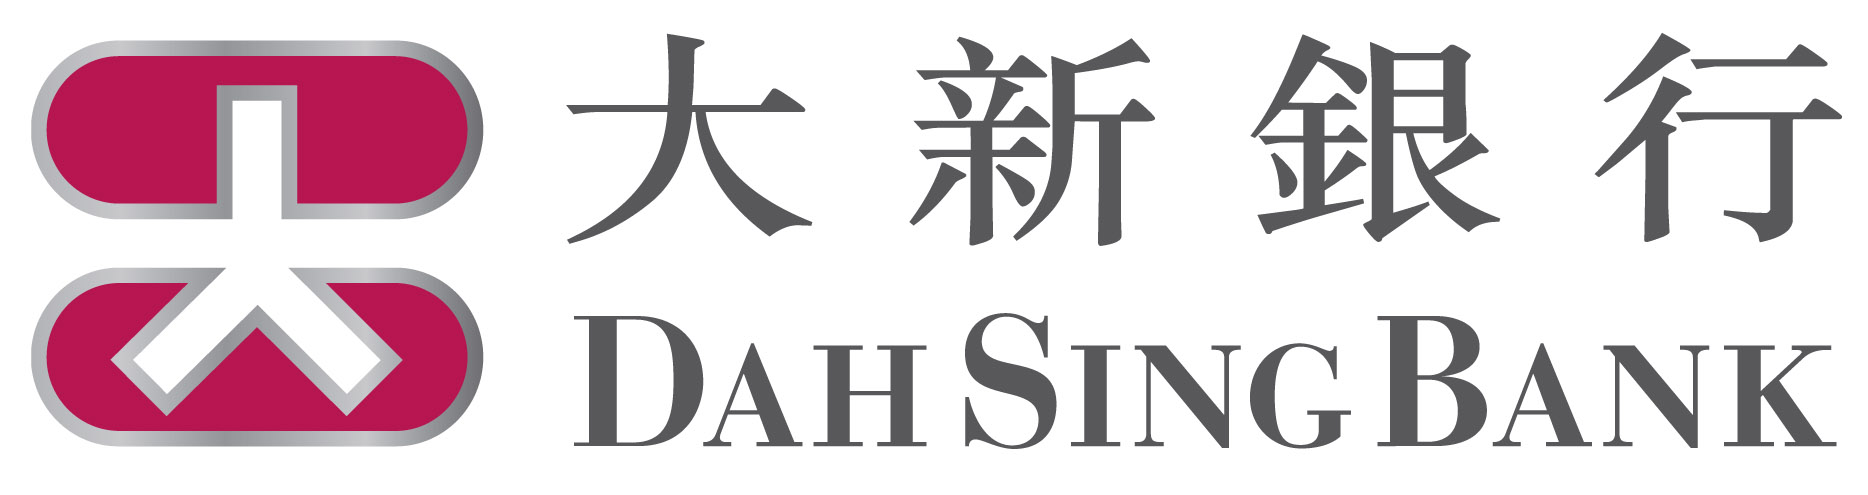 Dah Sing Bank Logo Image